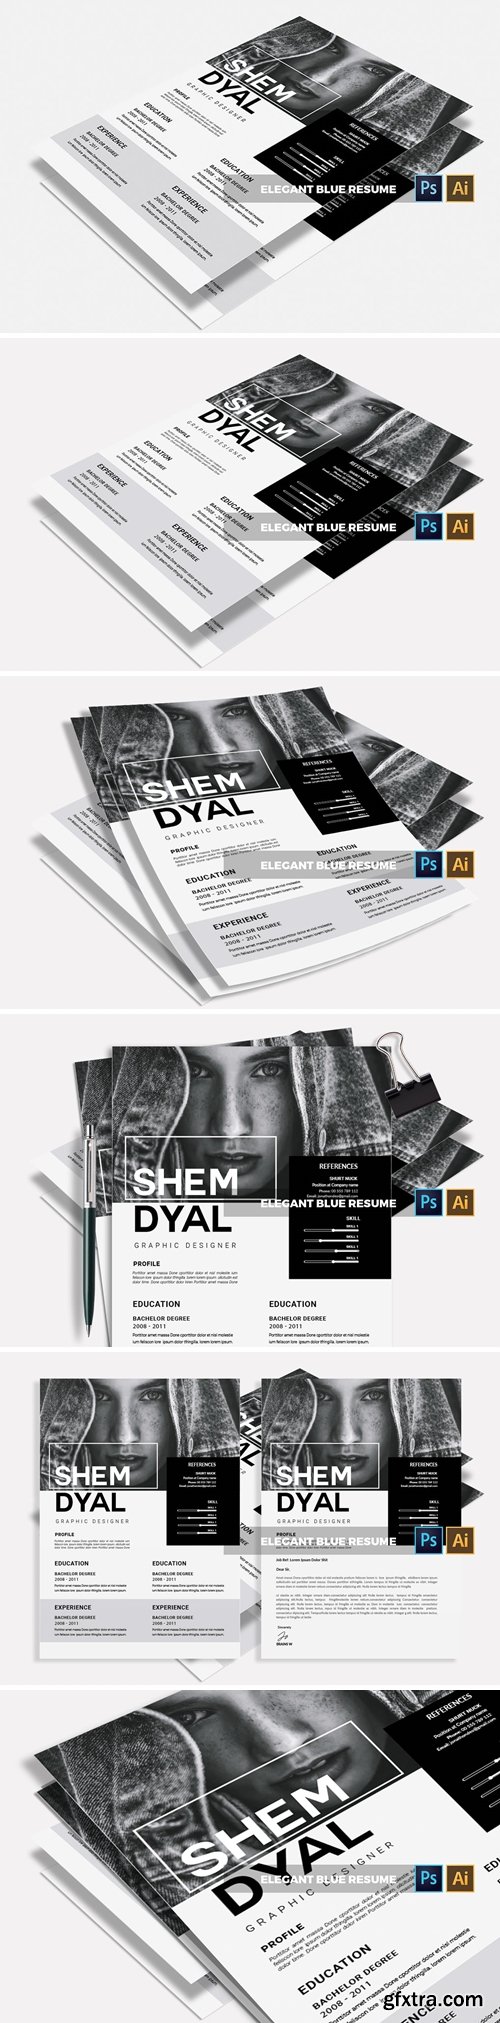 Shemdyal | CV & Resume